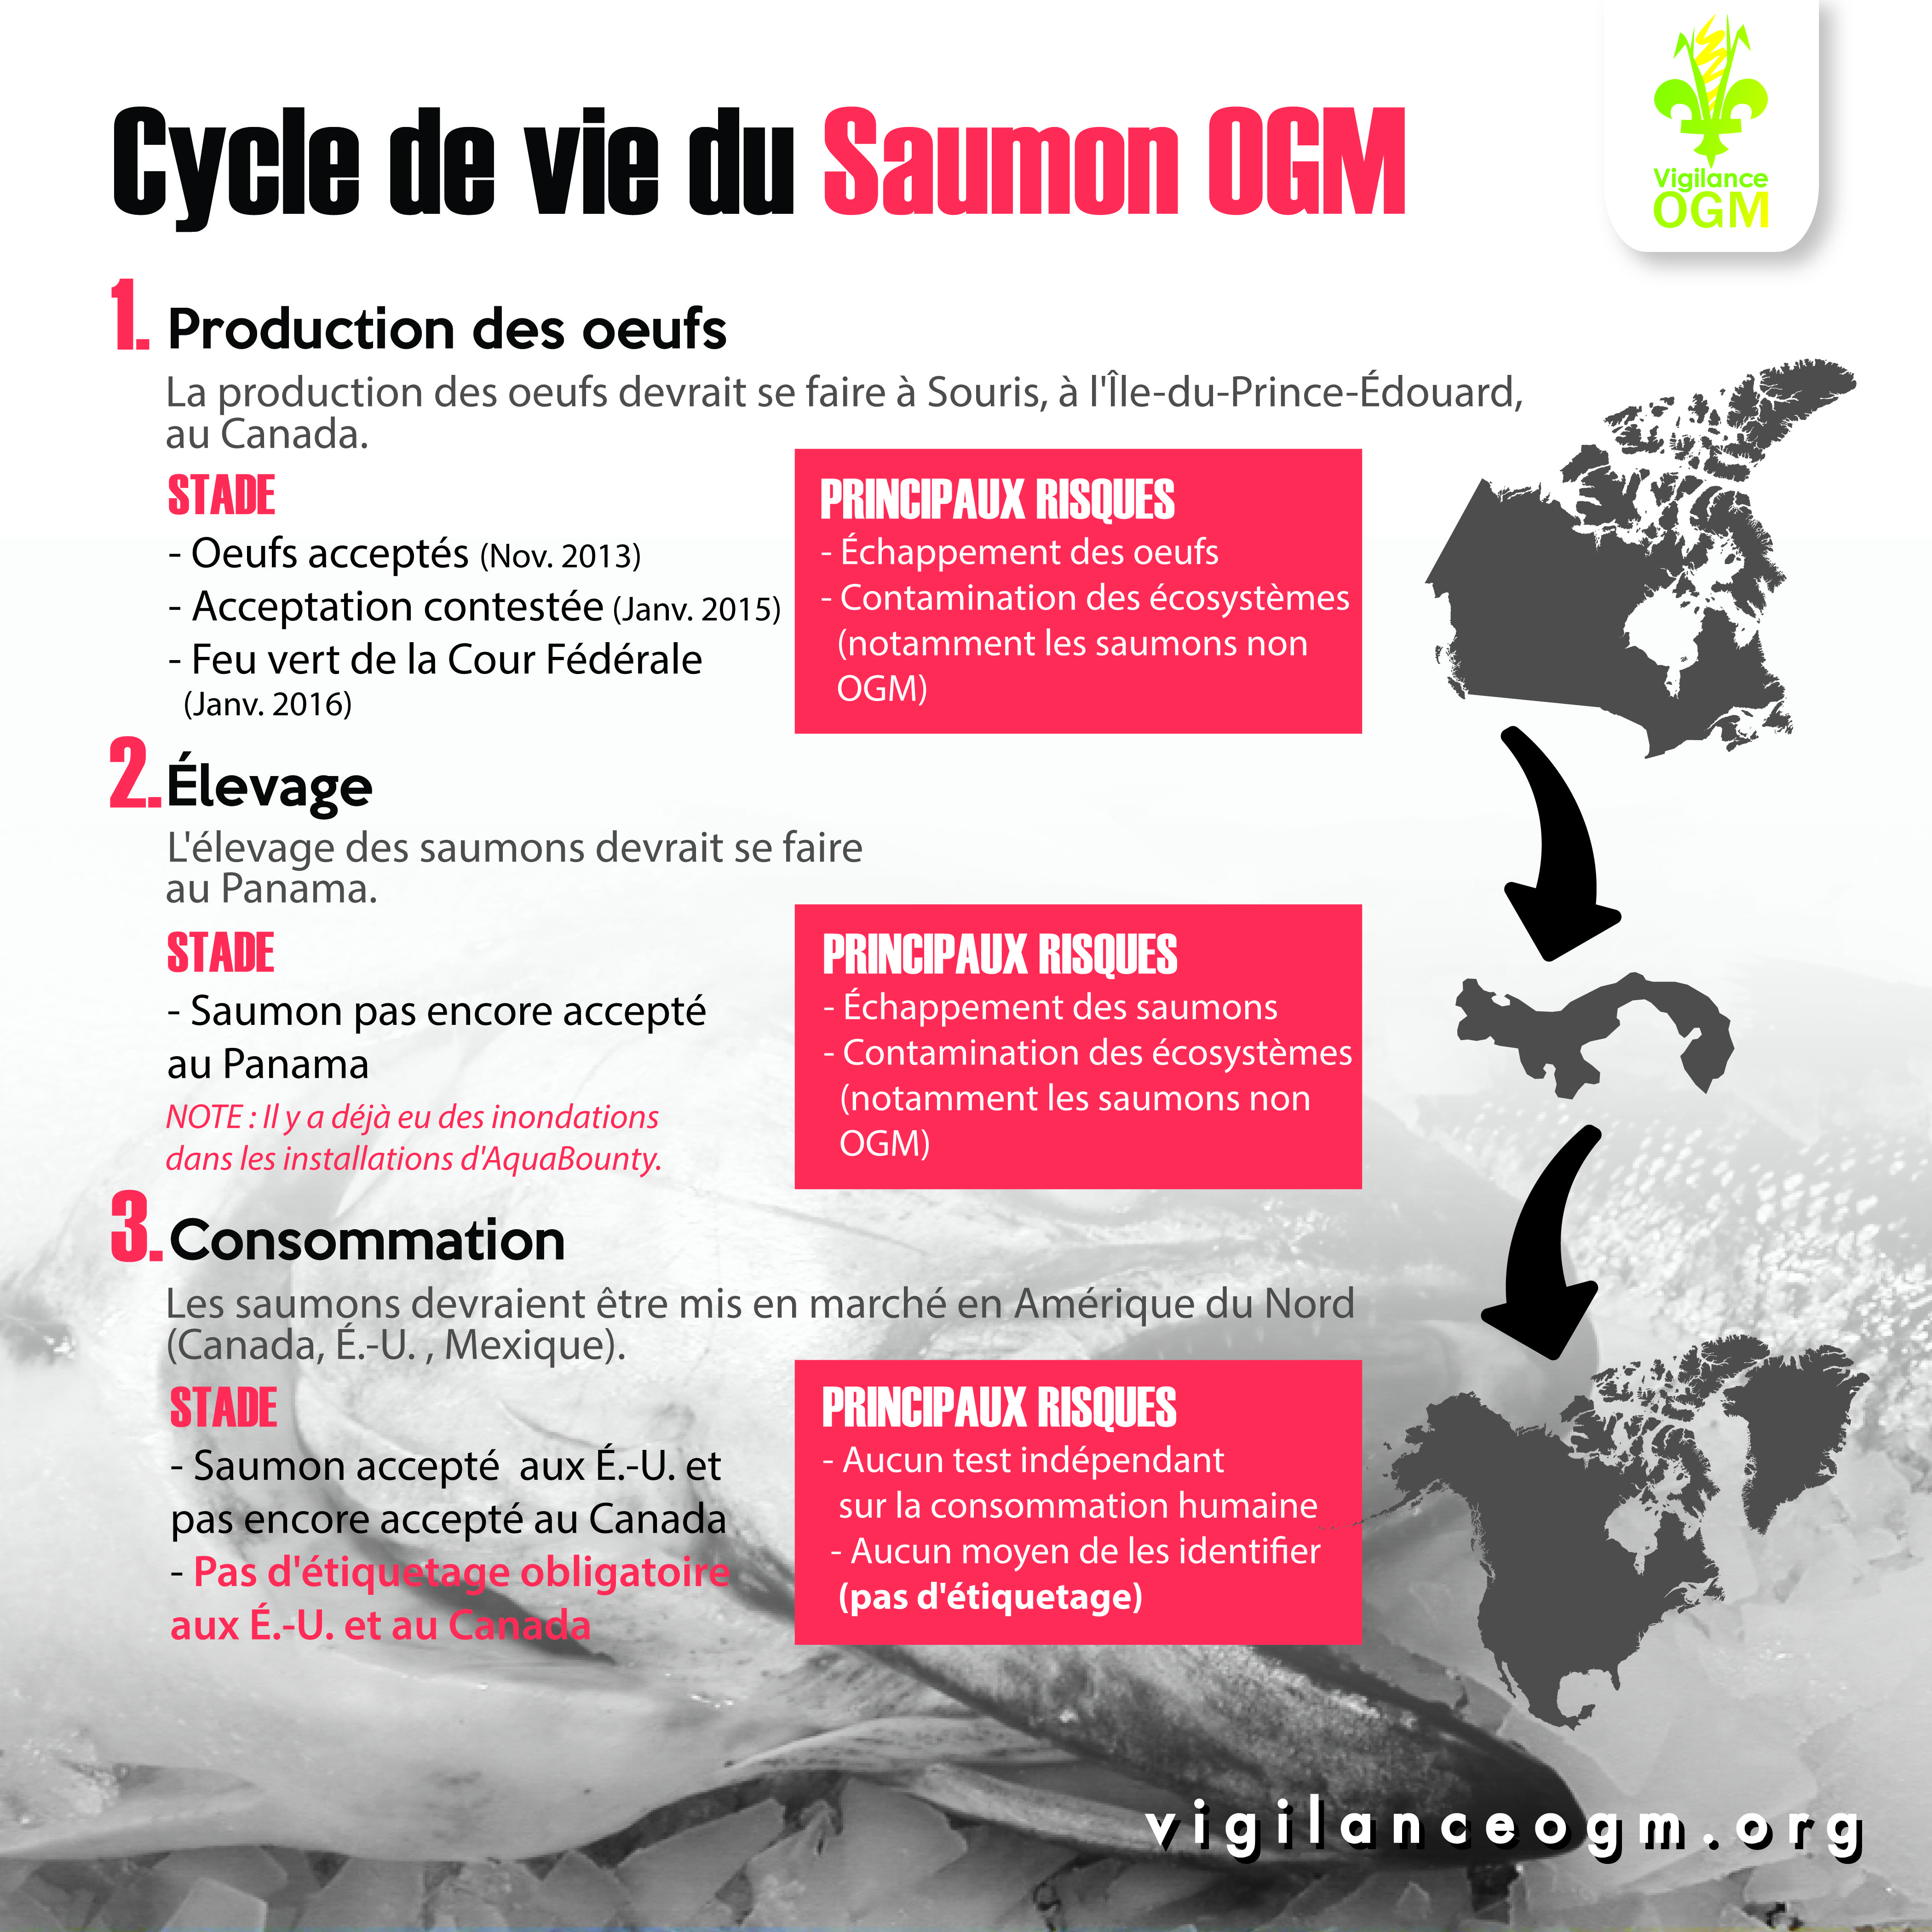 La production des oeufs de saumon OGM peut commencer